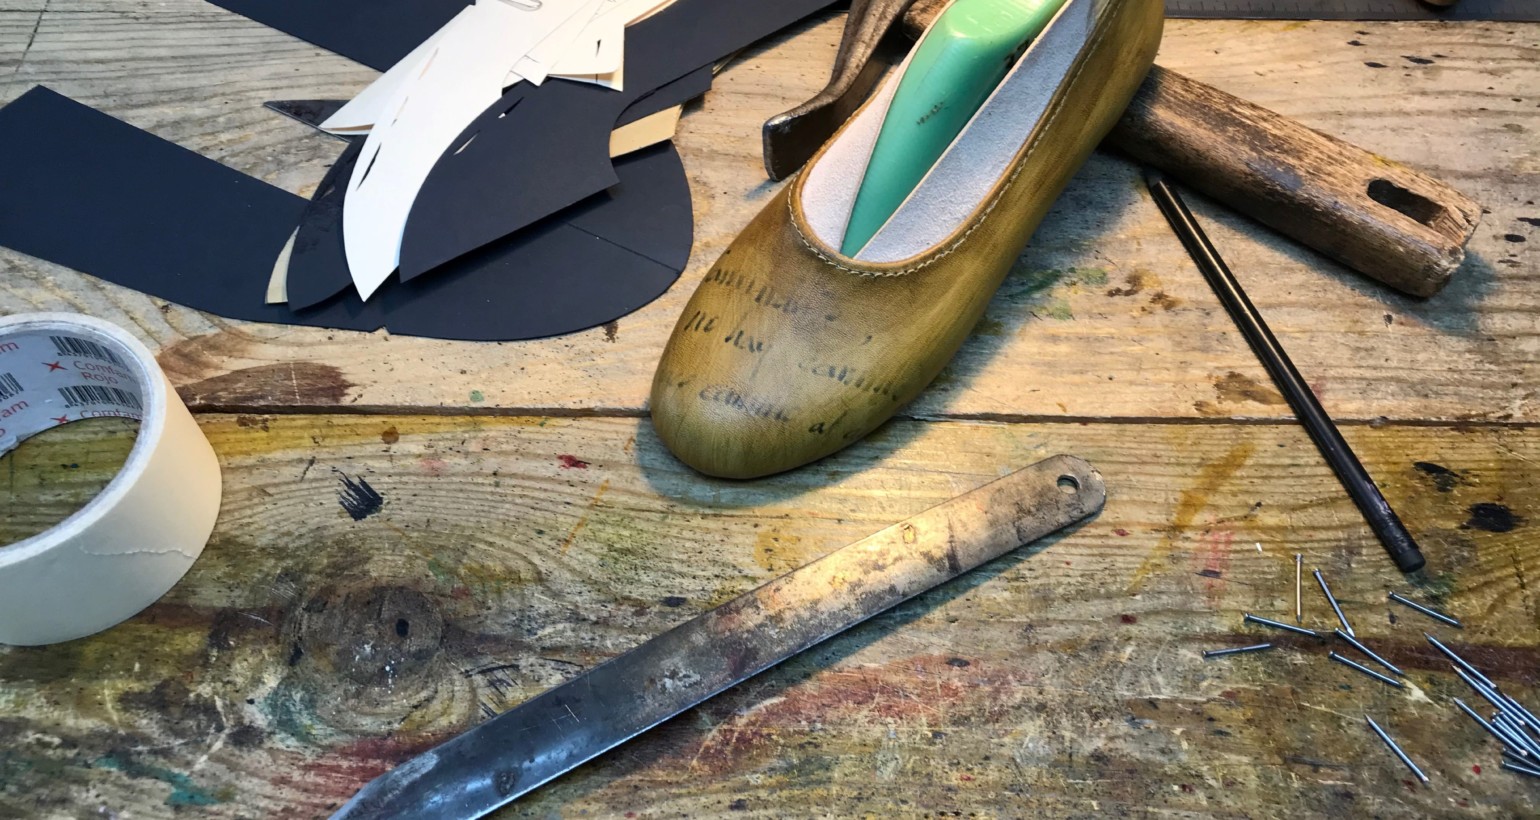 Iniciación a la fabricación de calzado